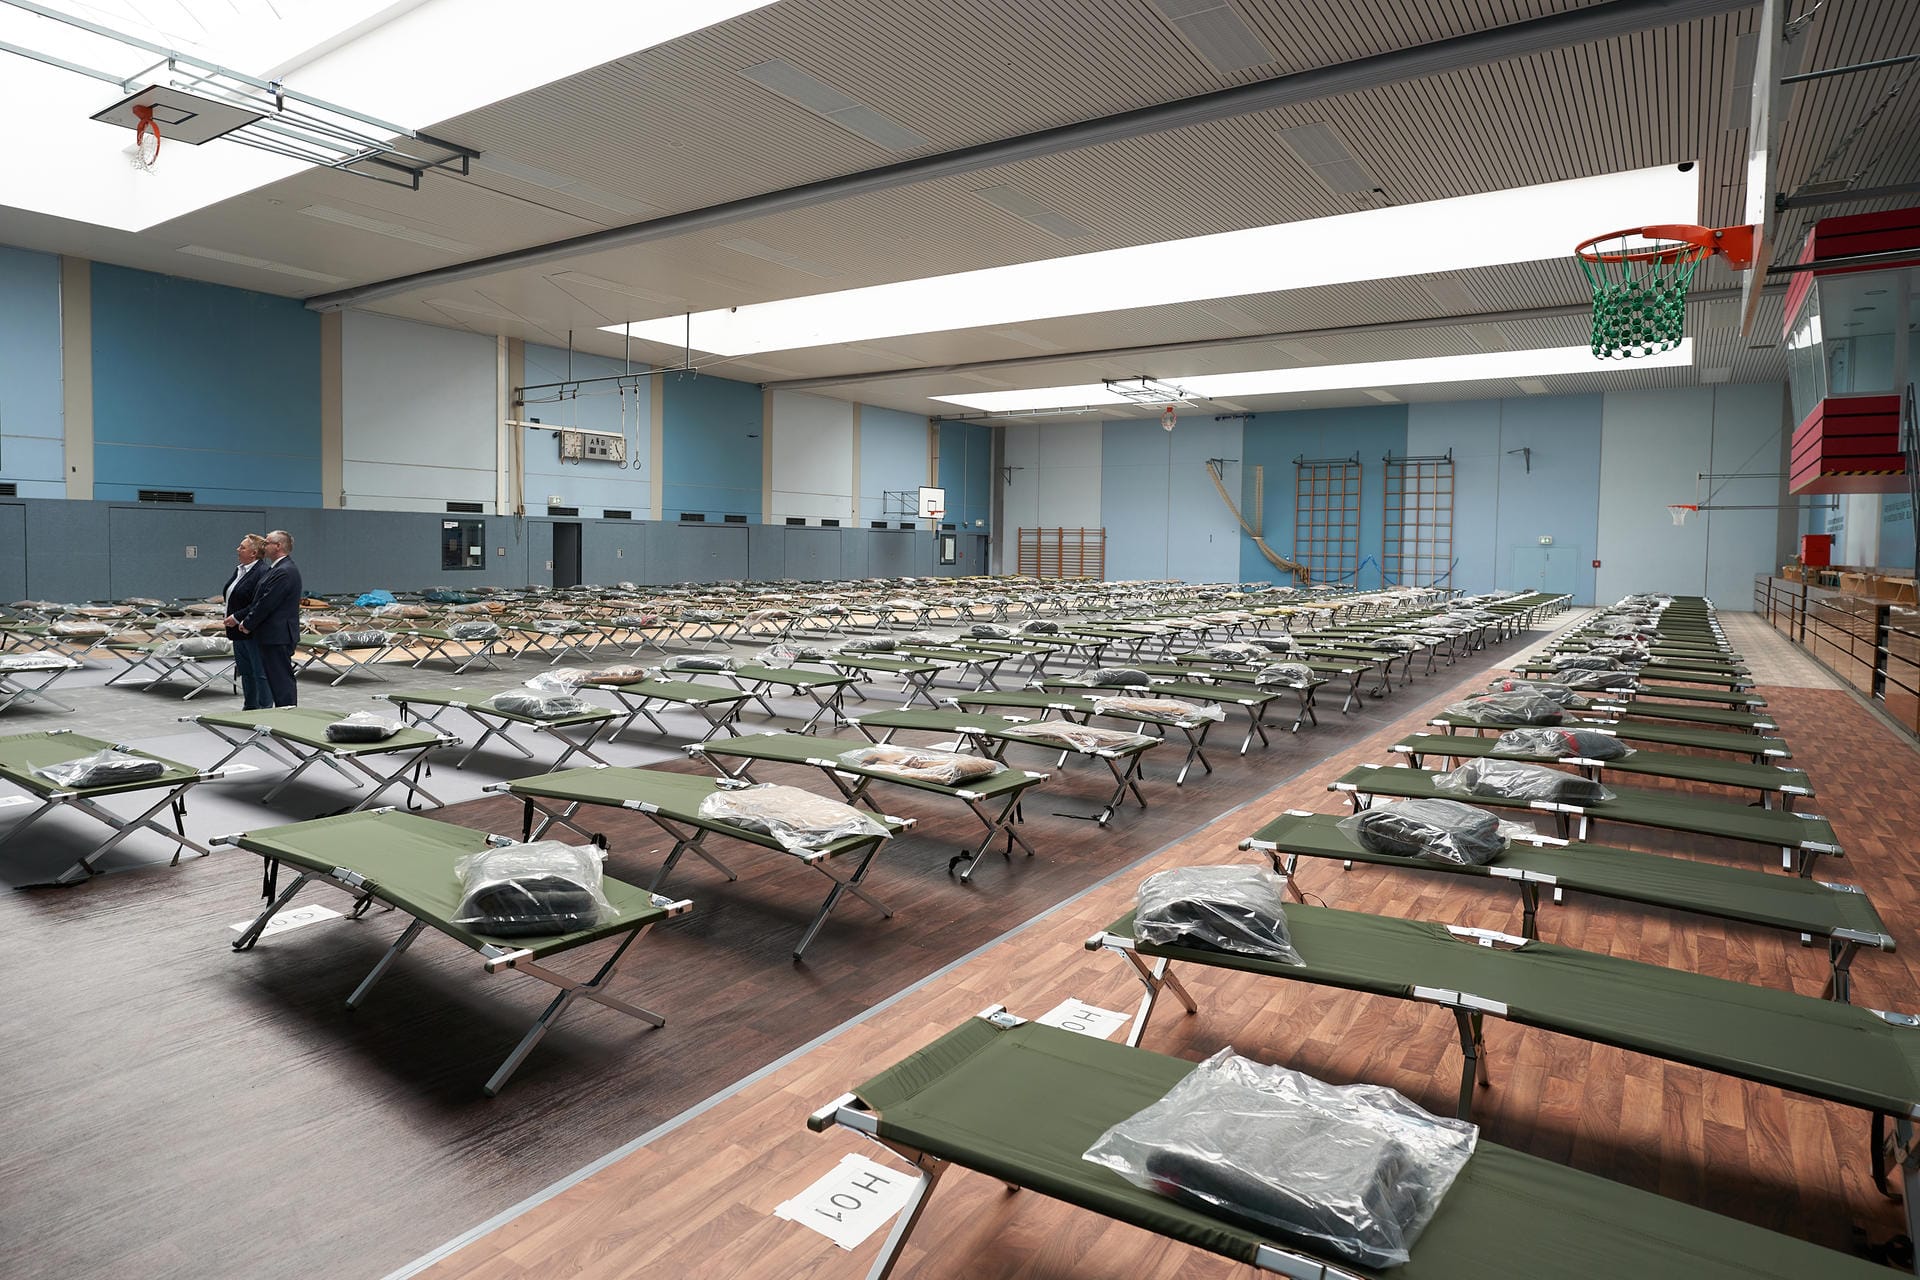 Rheinland-Pfalz, Koblenz: 200 Feldbetten stehen in der Sporthalle der IGS Pollenfeld bereit. Sollten die Krankenhäuser überlastet sein, sollen hier leichtere Fälle der Corona-Erkrankung behandelt werden.